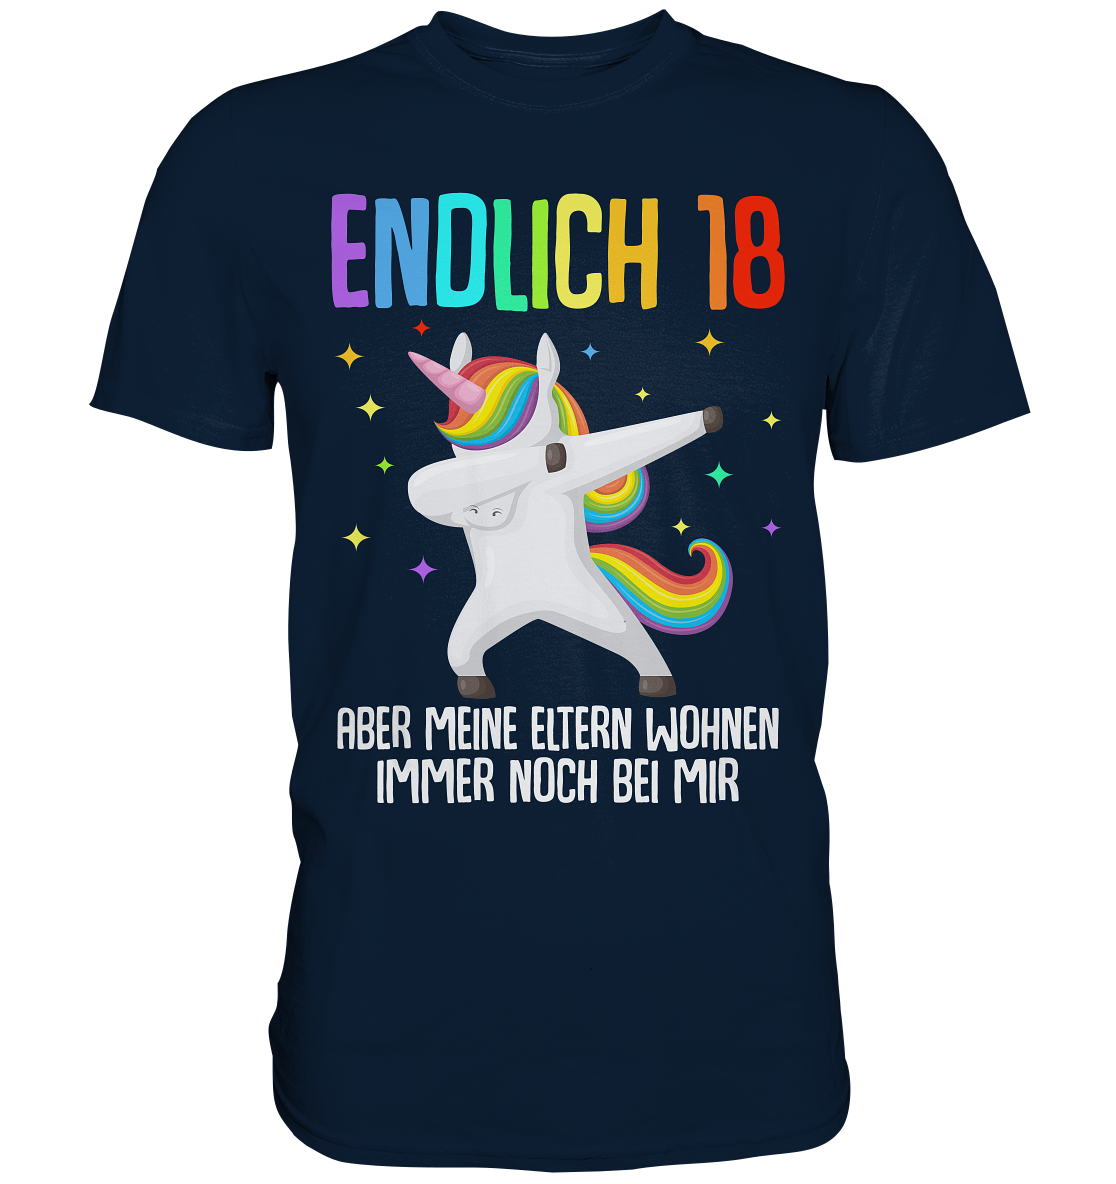 Endlich 18 T-Shirt: Spaßiges Einhorn-Design mit einem Hauch Ironie